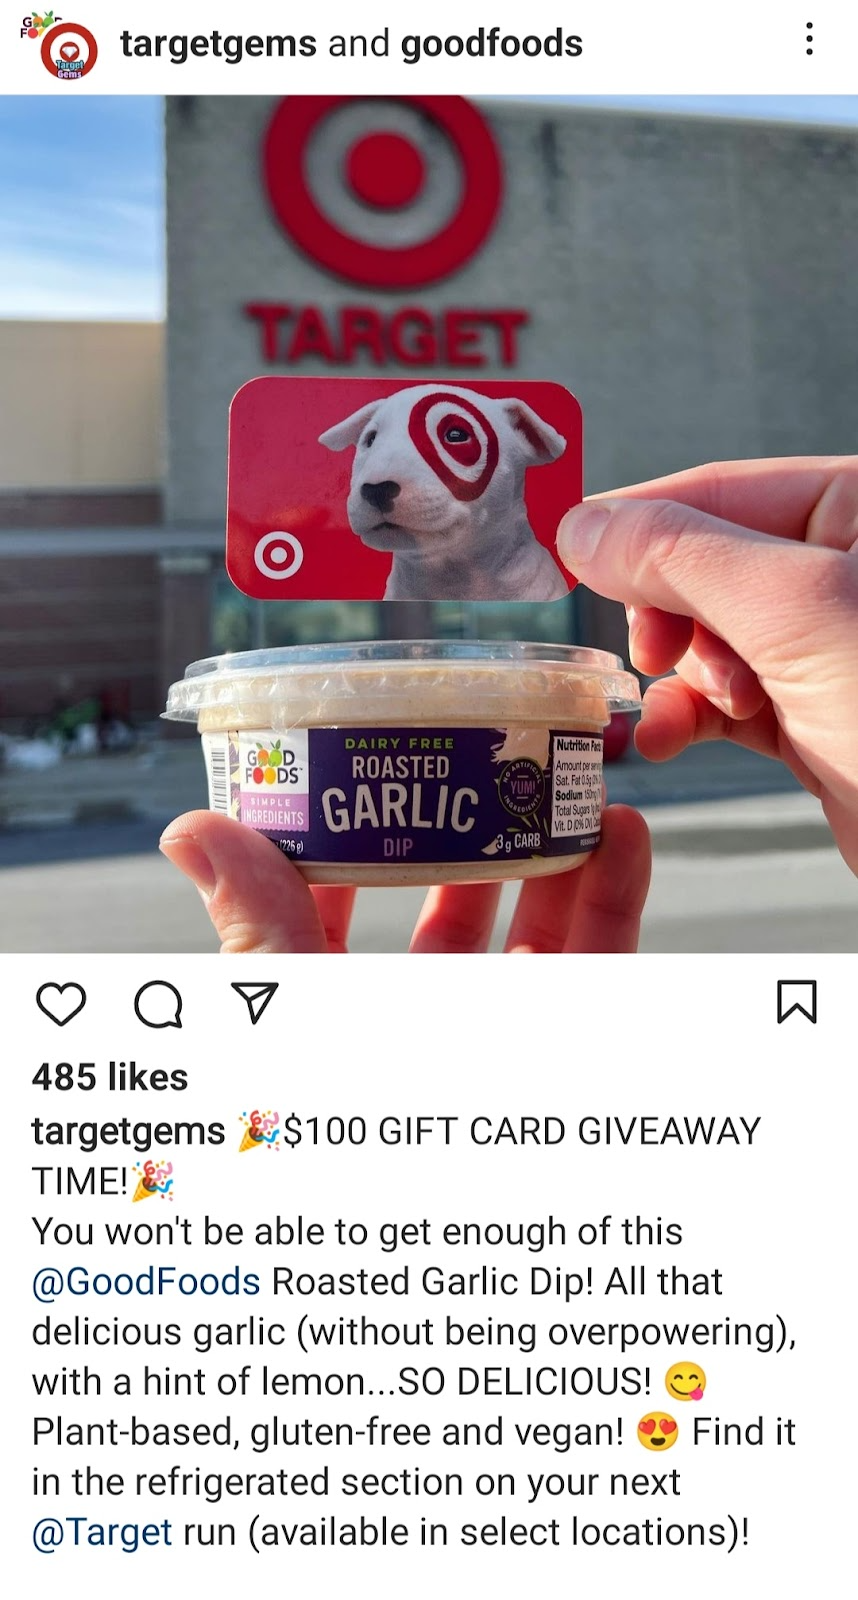 Instagram partner،p between Good Foods and Target Gems